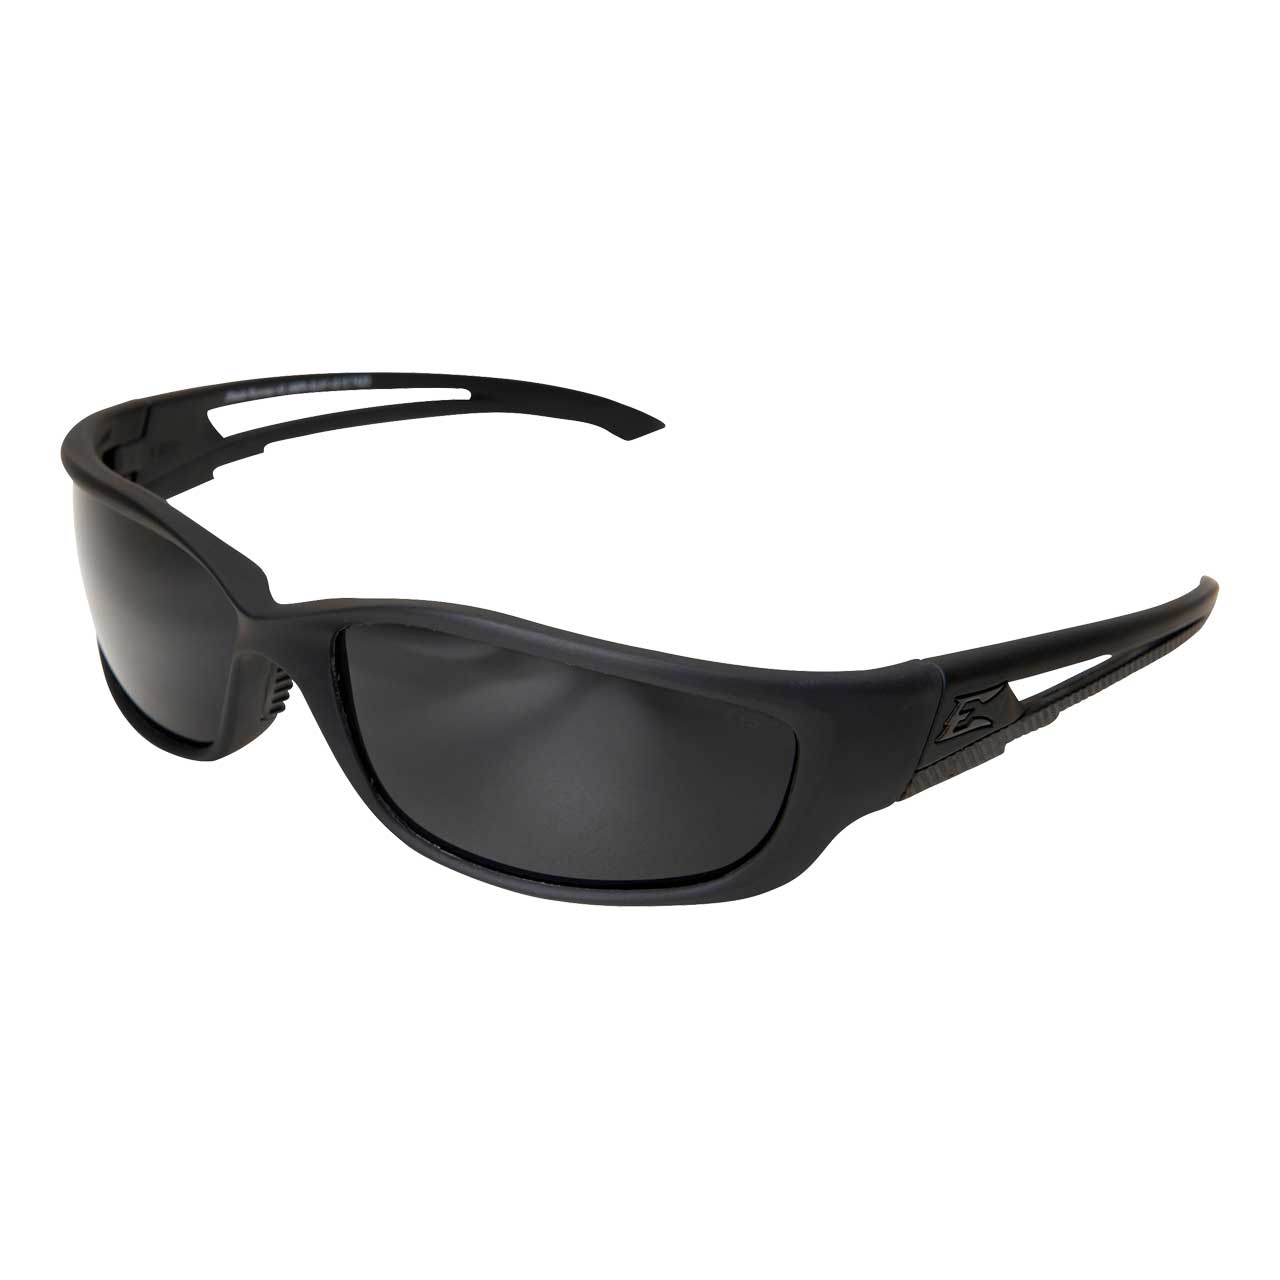 Edge Tactical Safety Eyewear, Blade Runner XL, matt schwarz, antikratzbeschichtet, beschlagfrei, TR